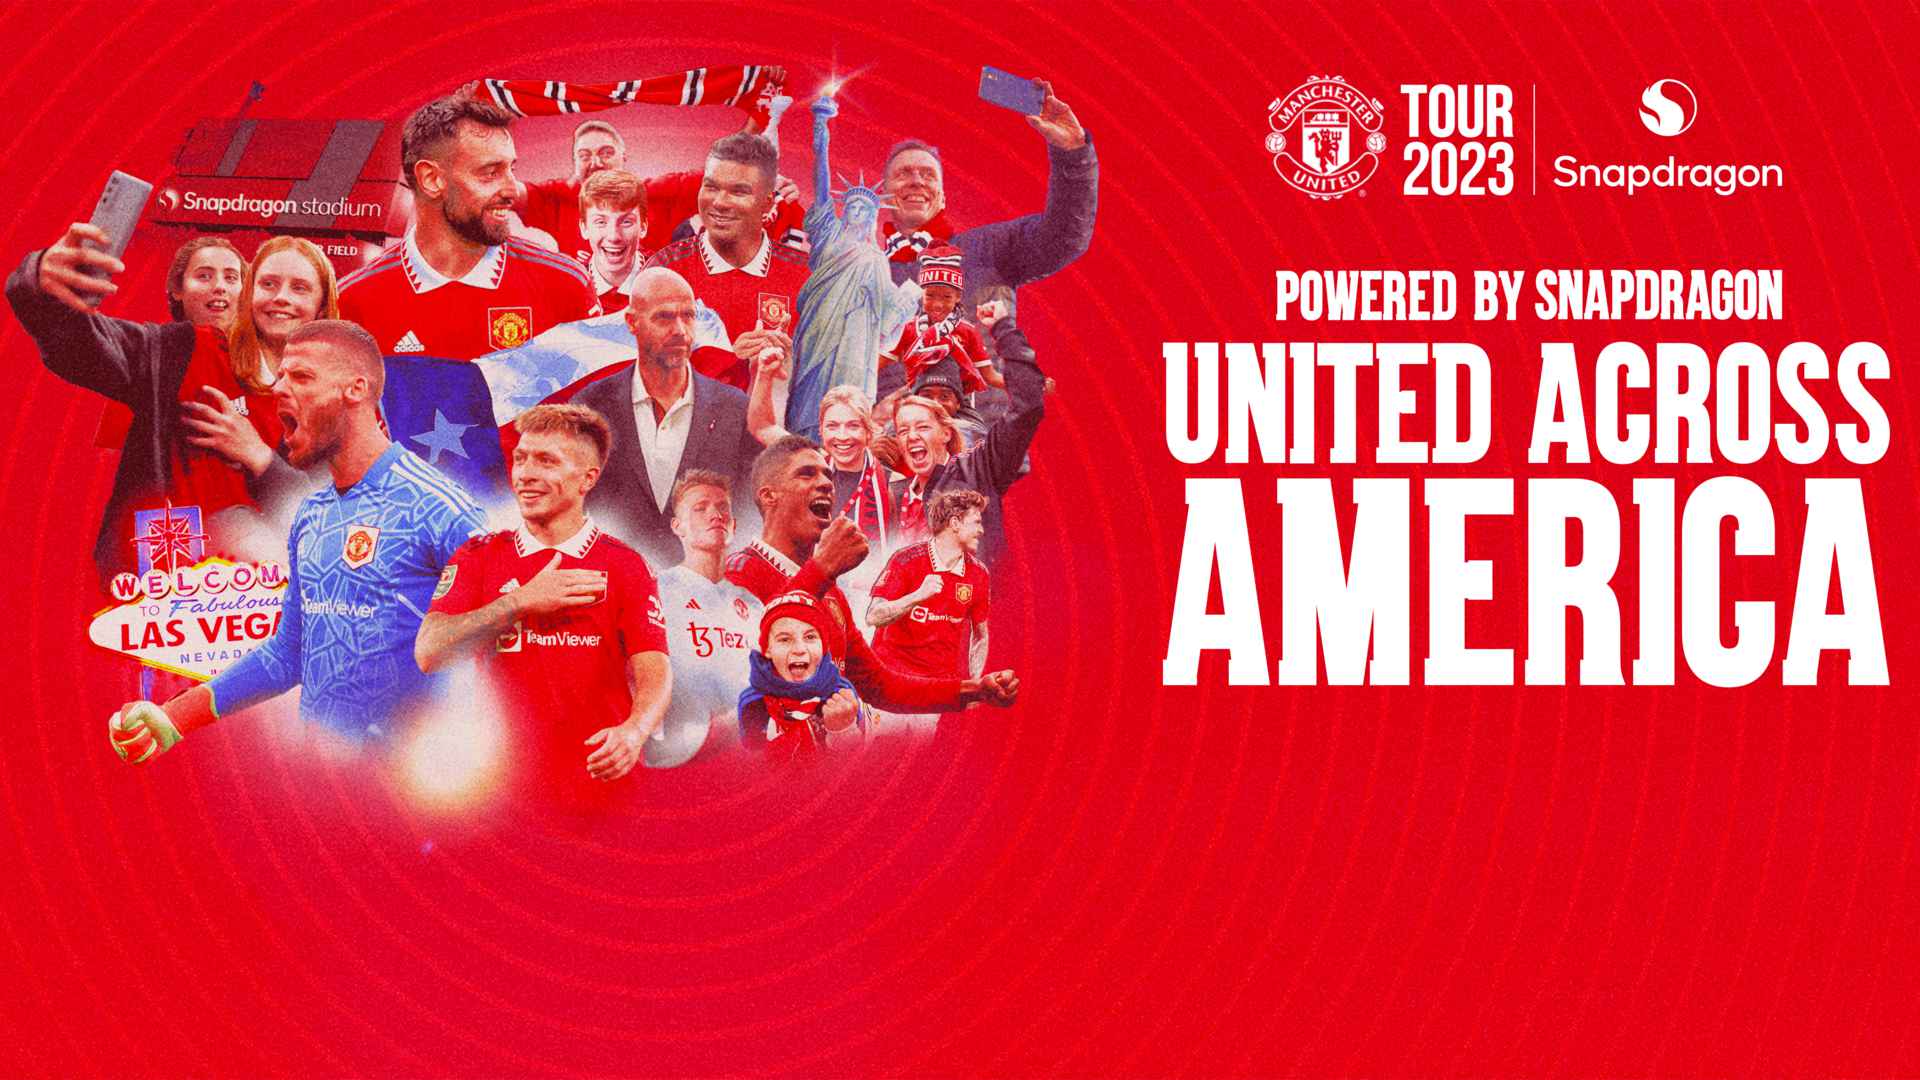 Snapdragon diumumkan sebagai mitra penyaji Man Utd’s USA Tour 2023